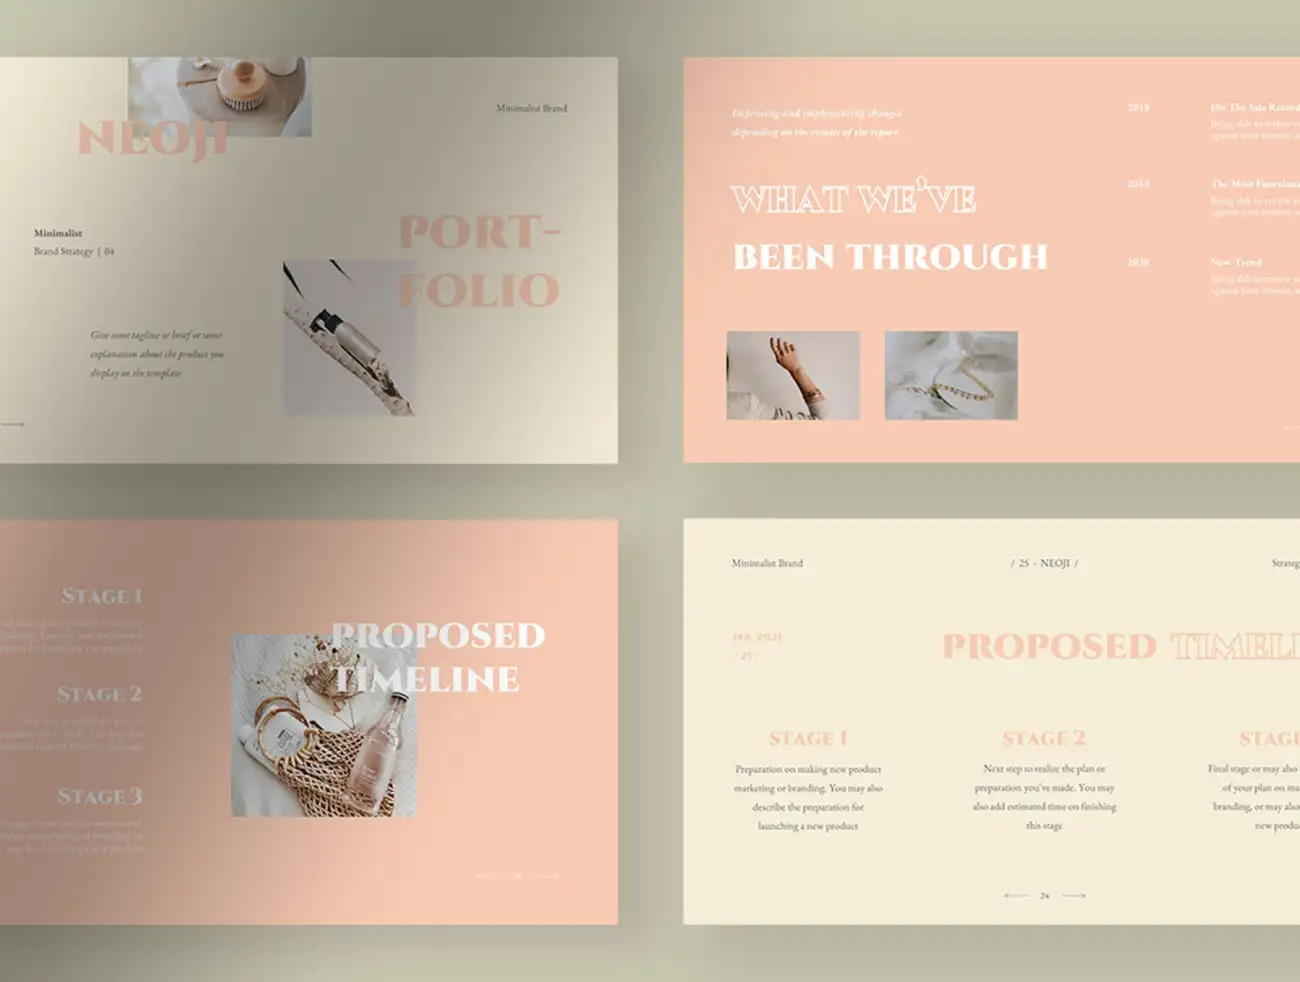 30屏极简主义品牌营销策划介绍PPT展示模板 Neoji – Soft Pastel Minimalist Brand Strategy Presentation插图5